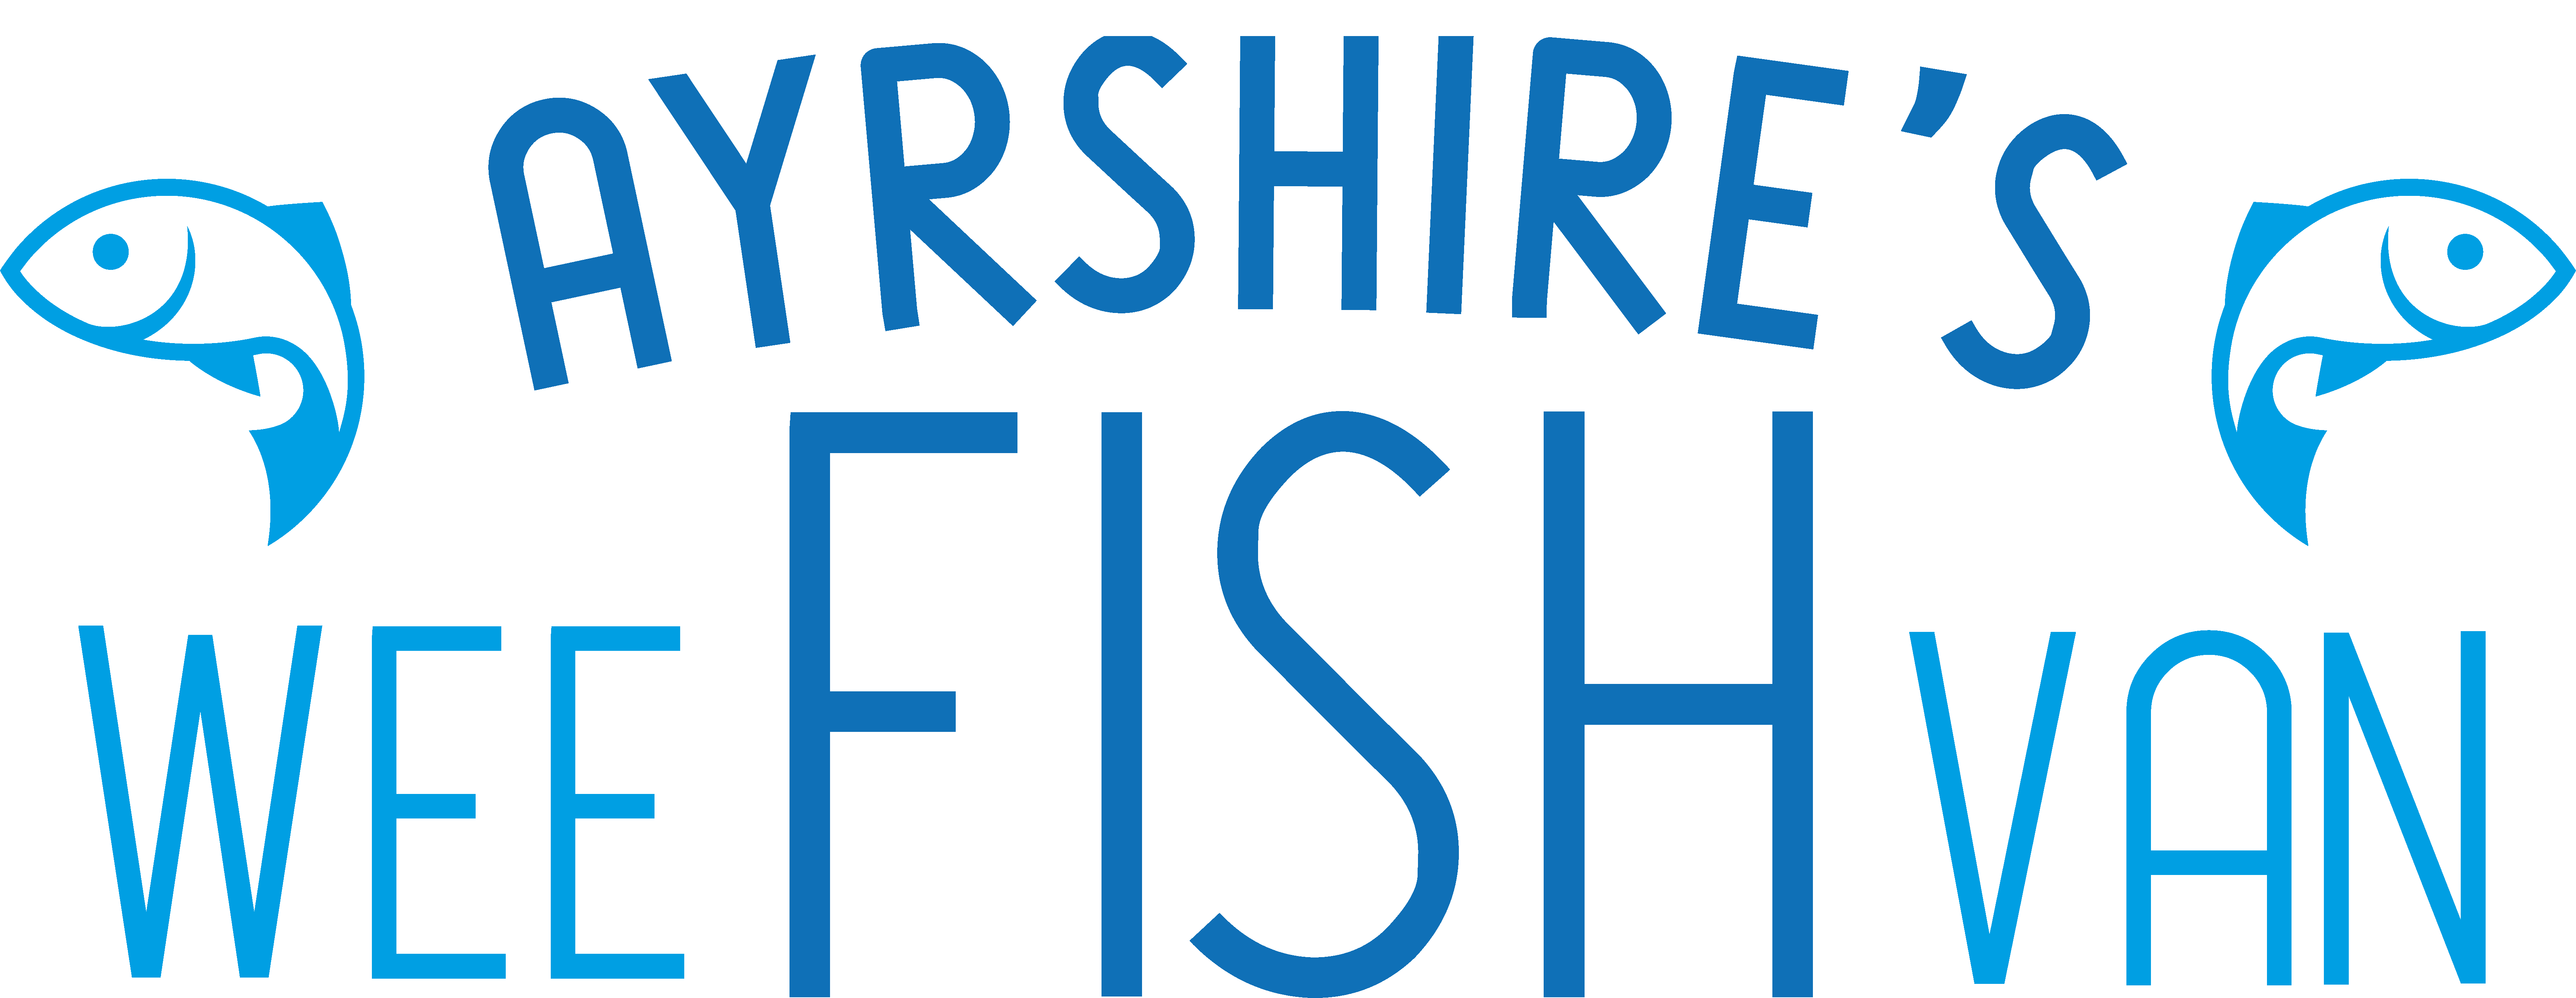 Blog | Ayrshires Wee Fish Van